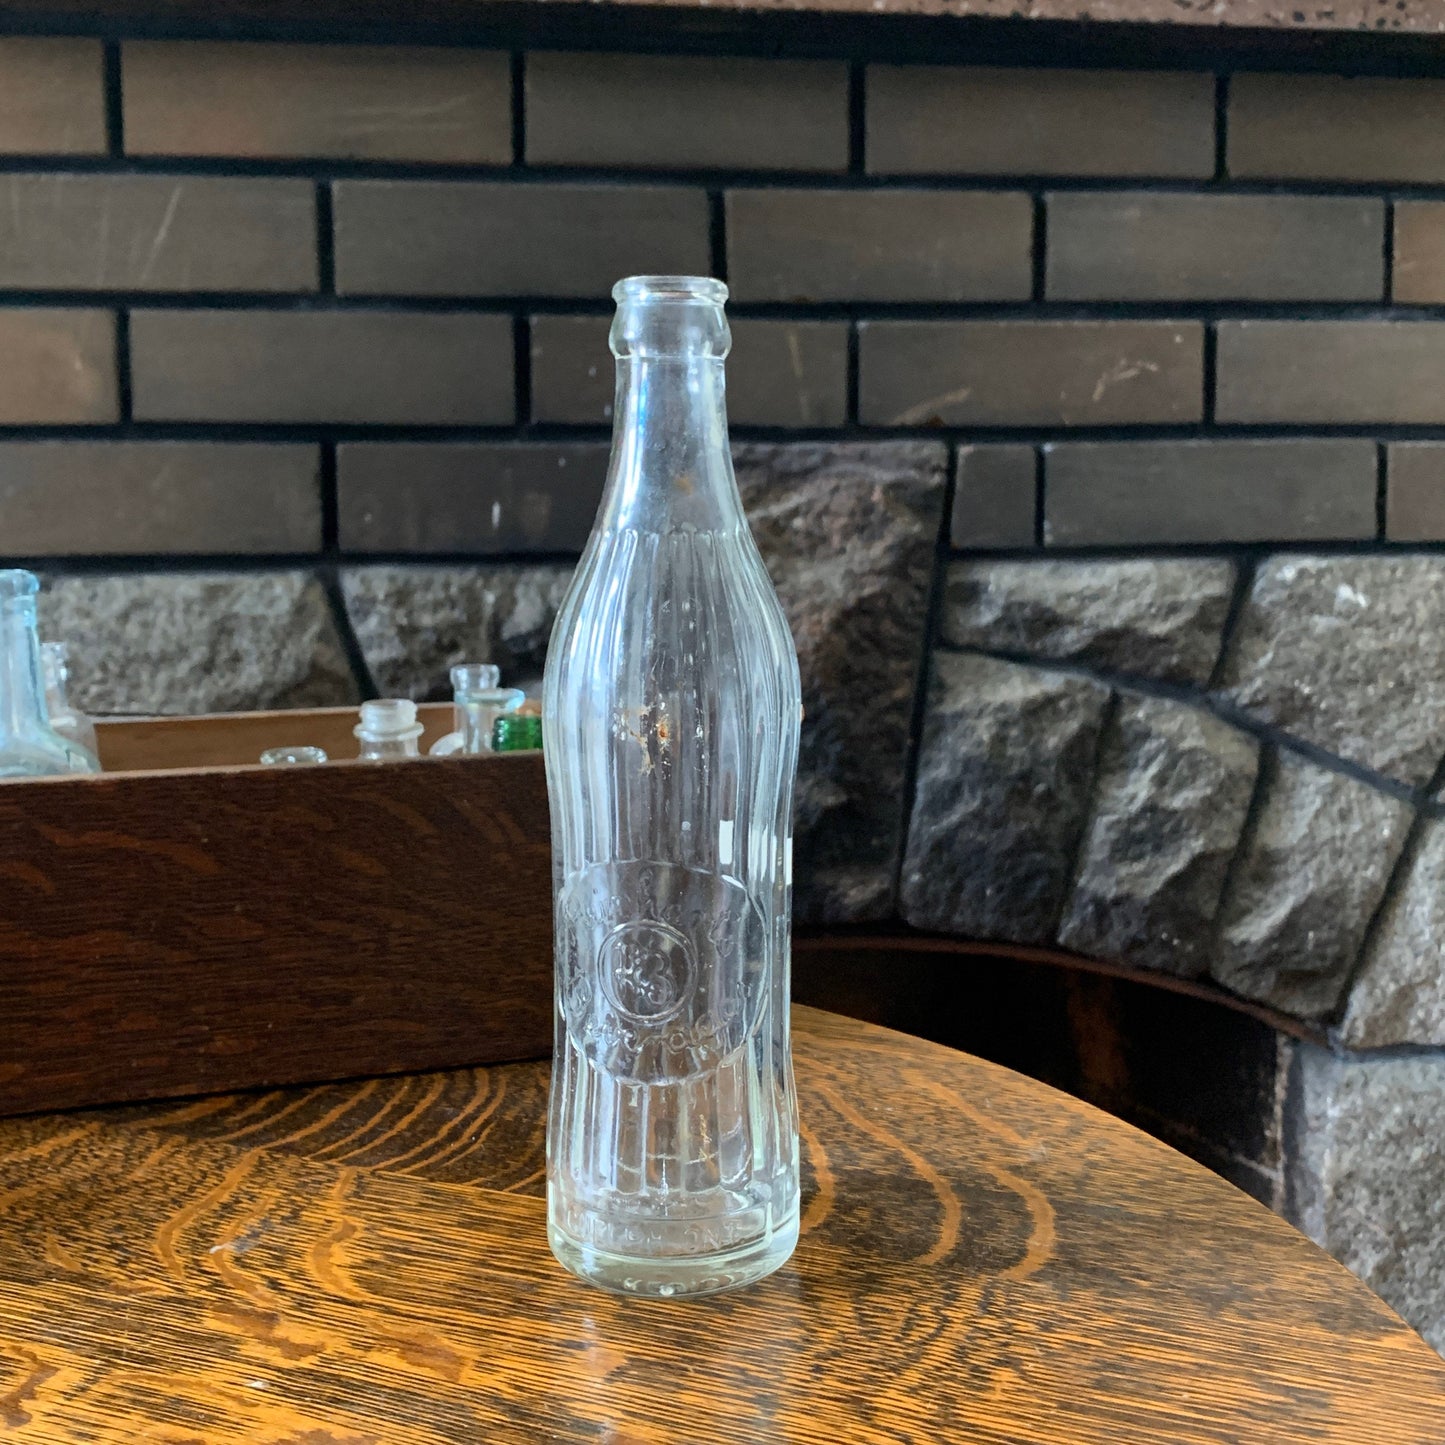 Vintage Pop Bottle Reinhart’s Beverages Guelph Ontario, Vintage Canadiana